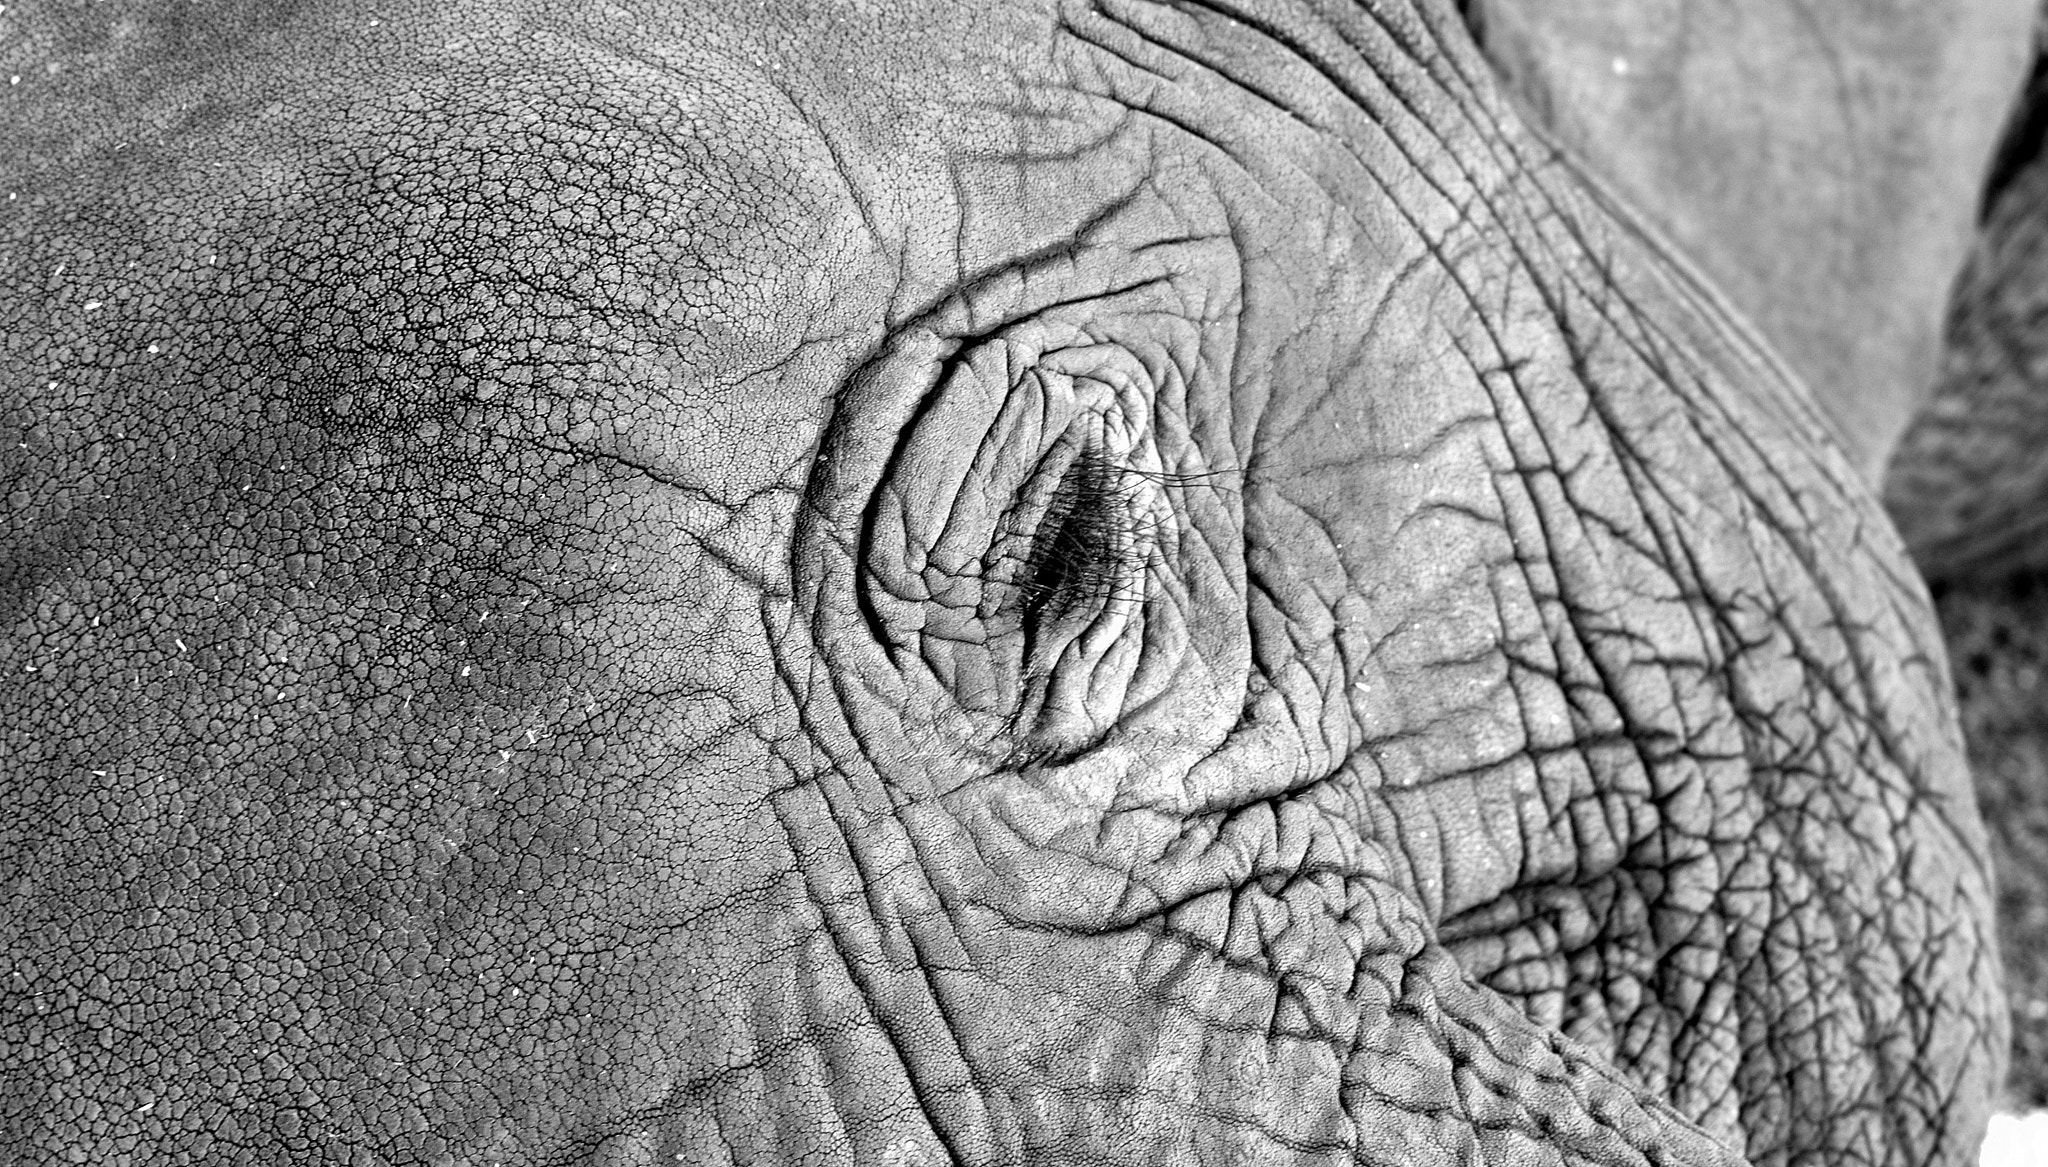 Nikon D810 + Nikon AF-S DX Nikkor 35mm F1.8G sample photo. African elephant skin photography